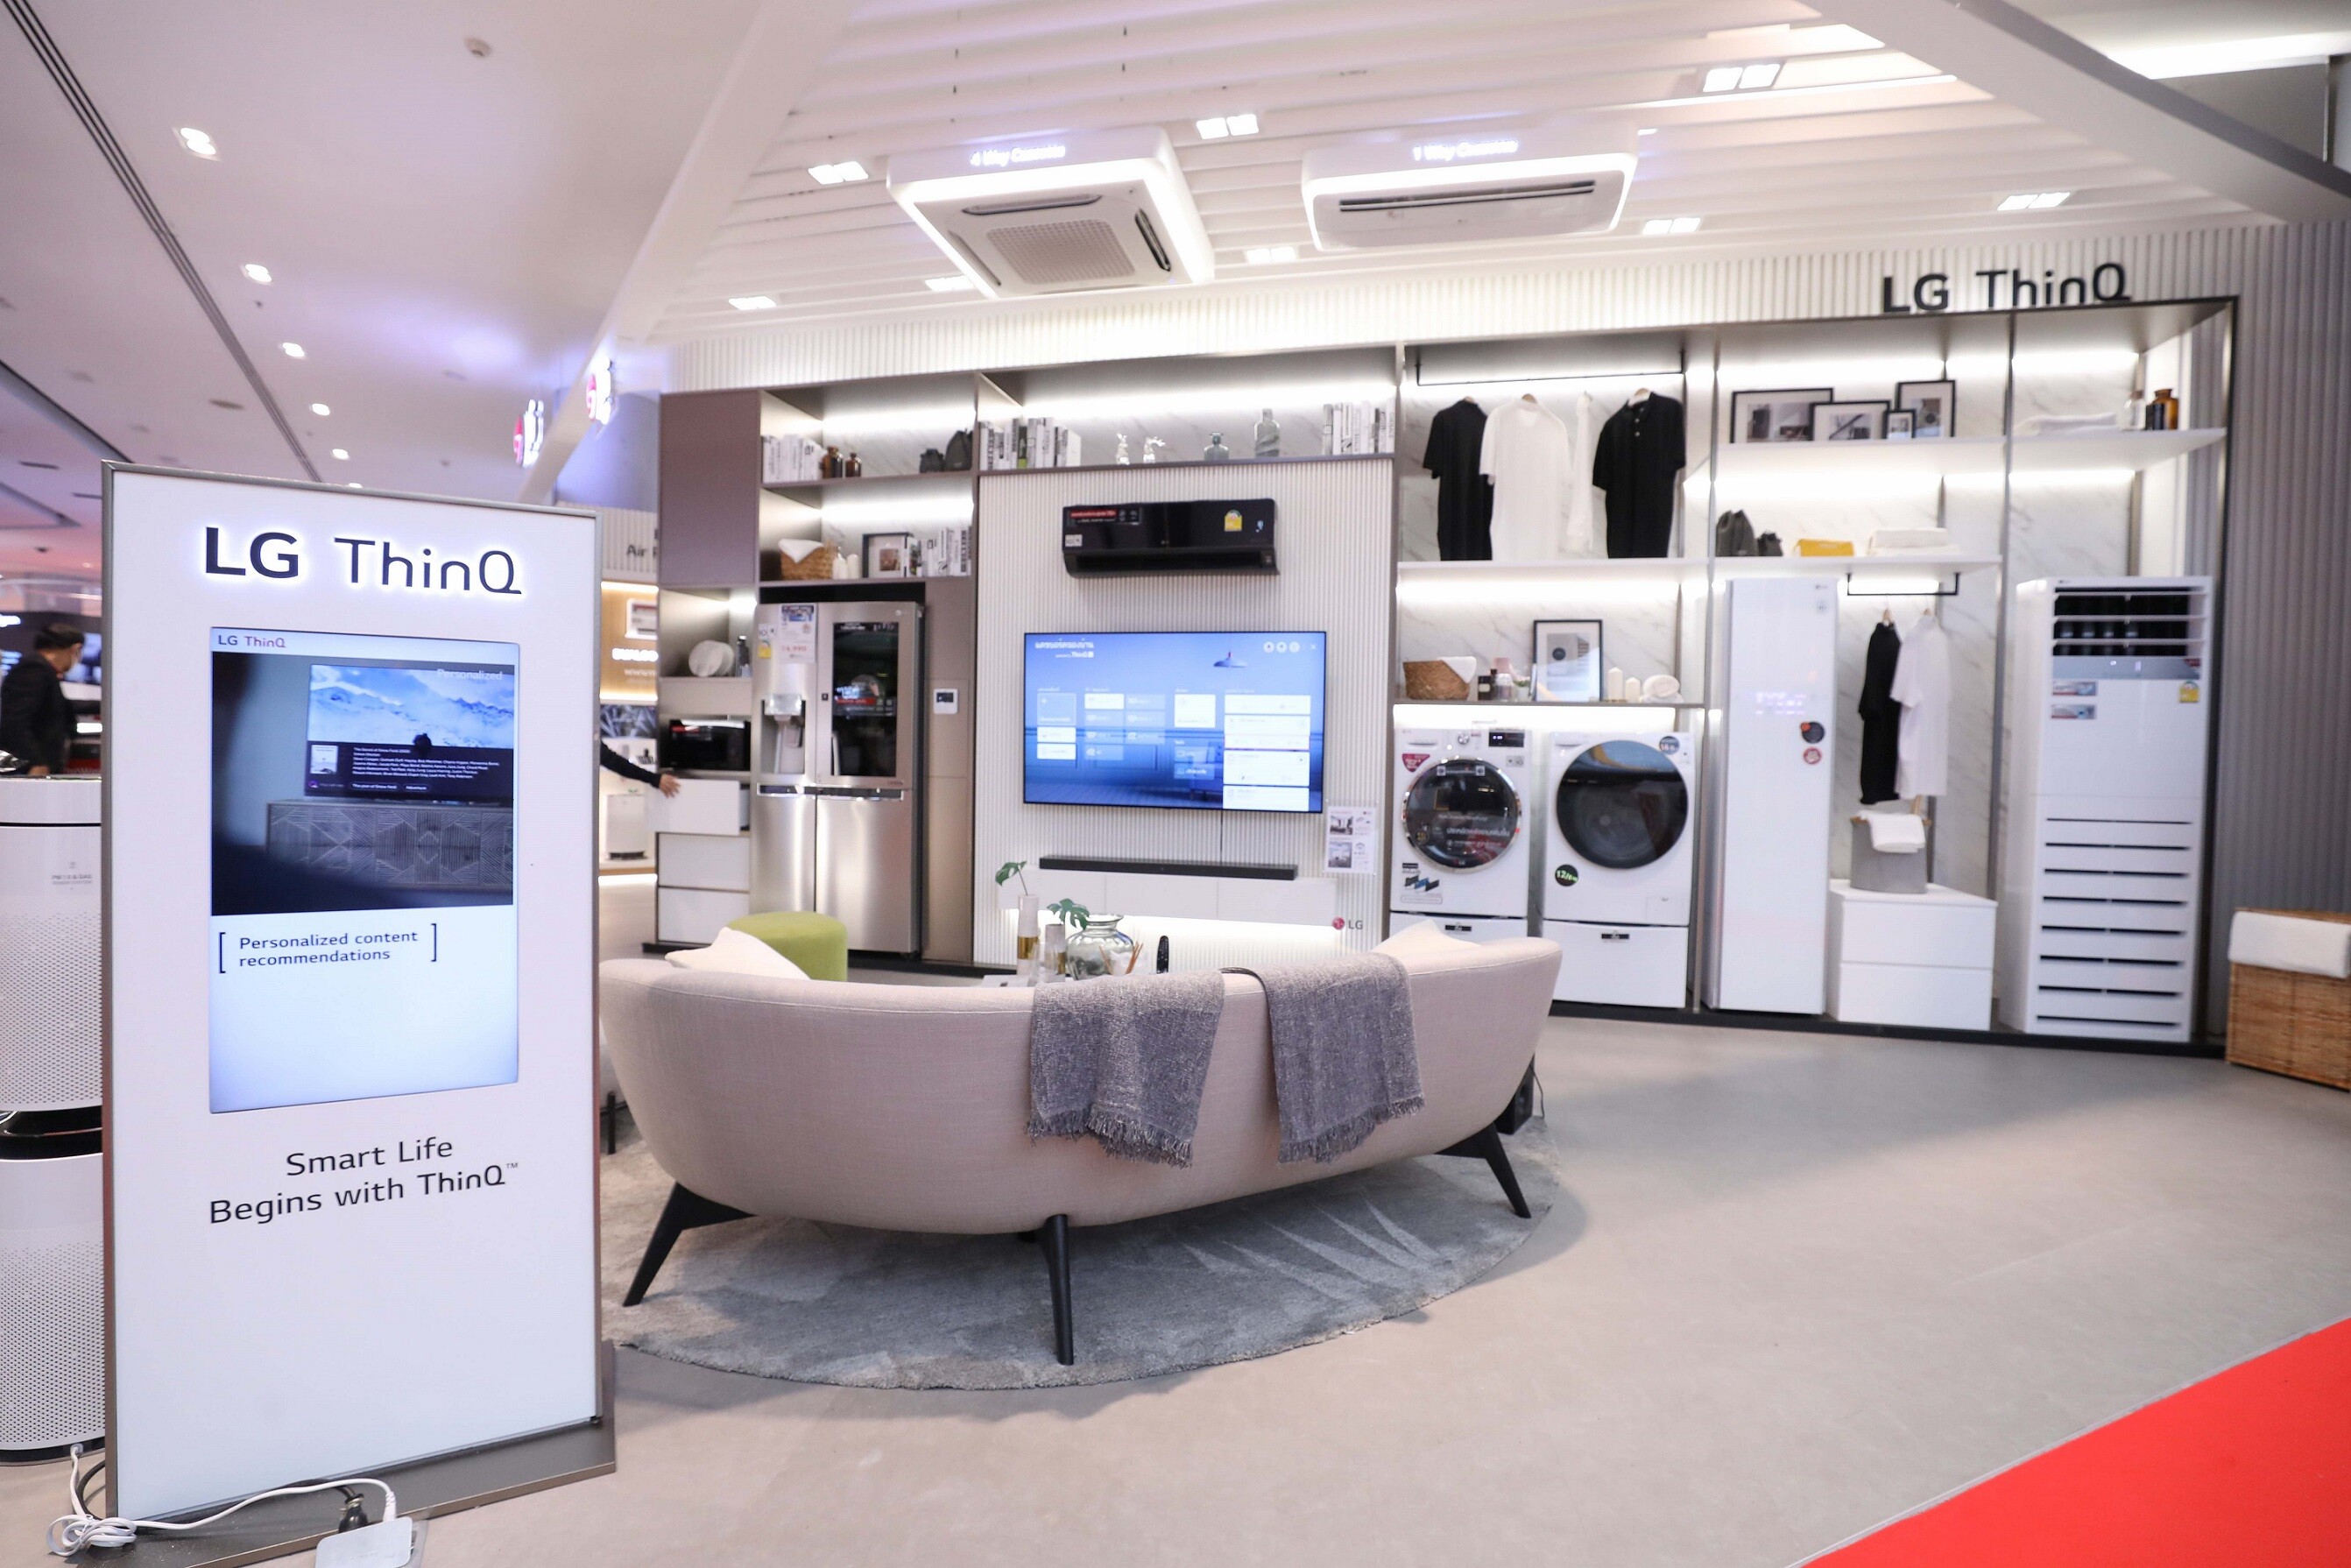 แอลจีย้ำแนวคิด “Total Home Solutions” ด้วย LG Experience Zone ณ เพาเวอร์ มอลล์ สยามพารากอน